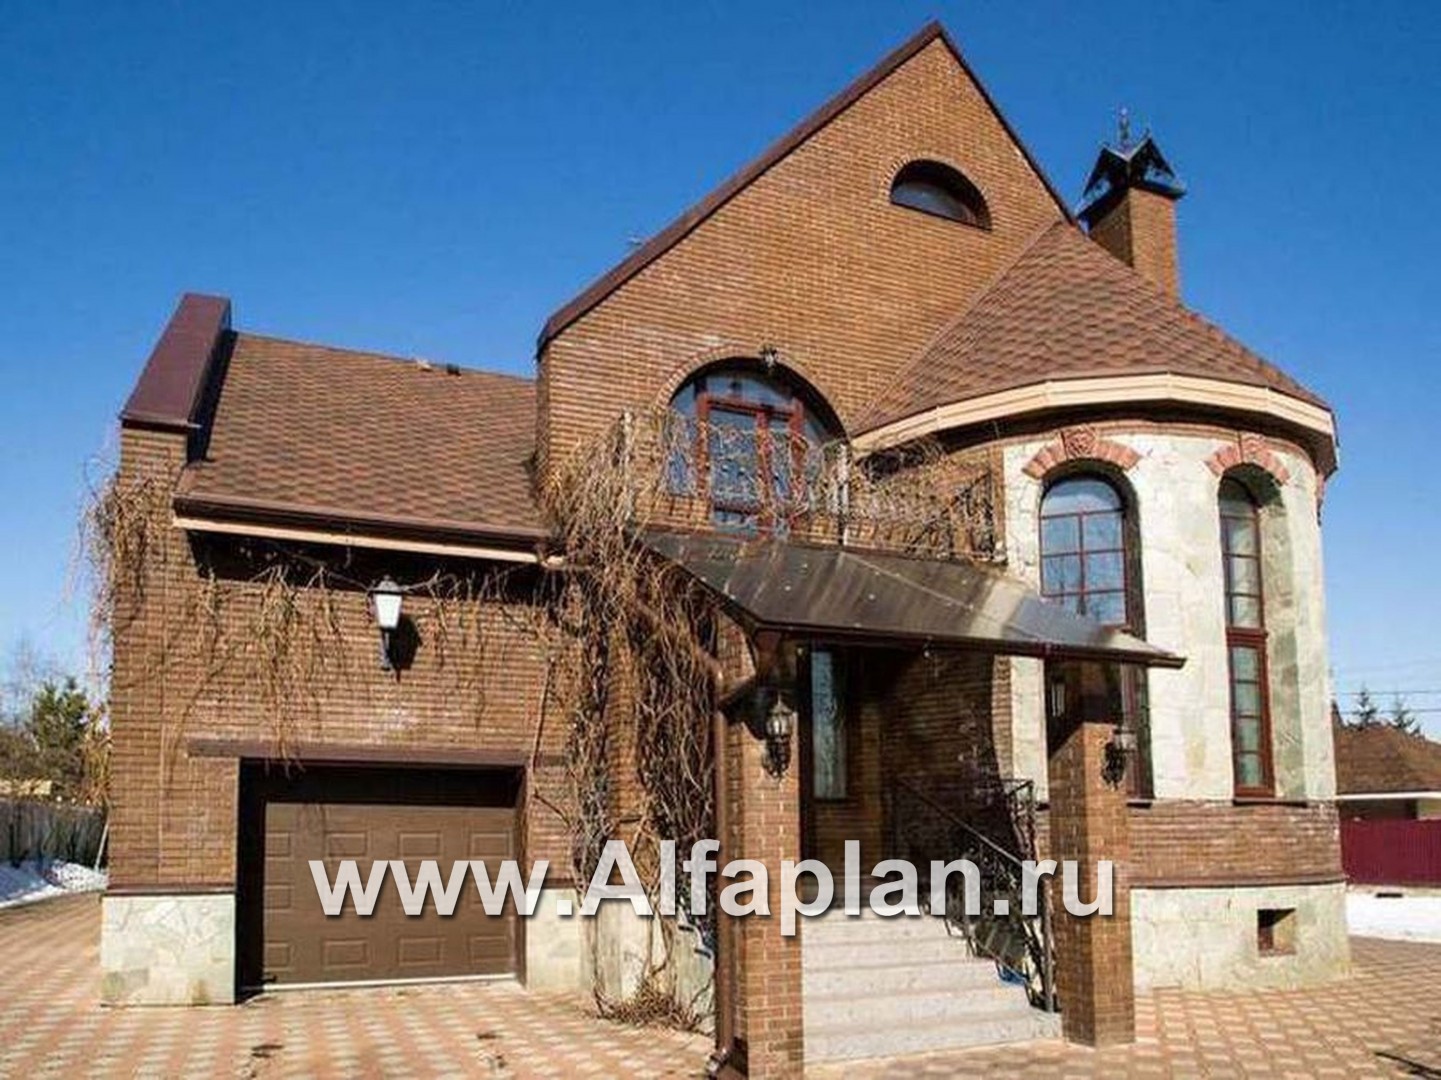 Проекты домов Альфаплан - «Онегин» - представительный загородный дом - дополнительное изображение №5